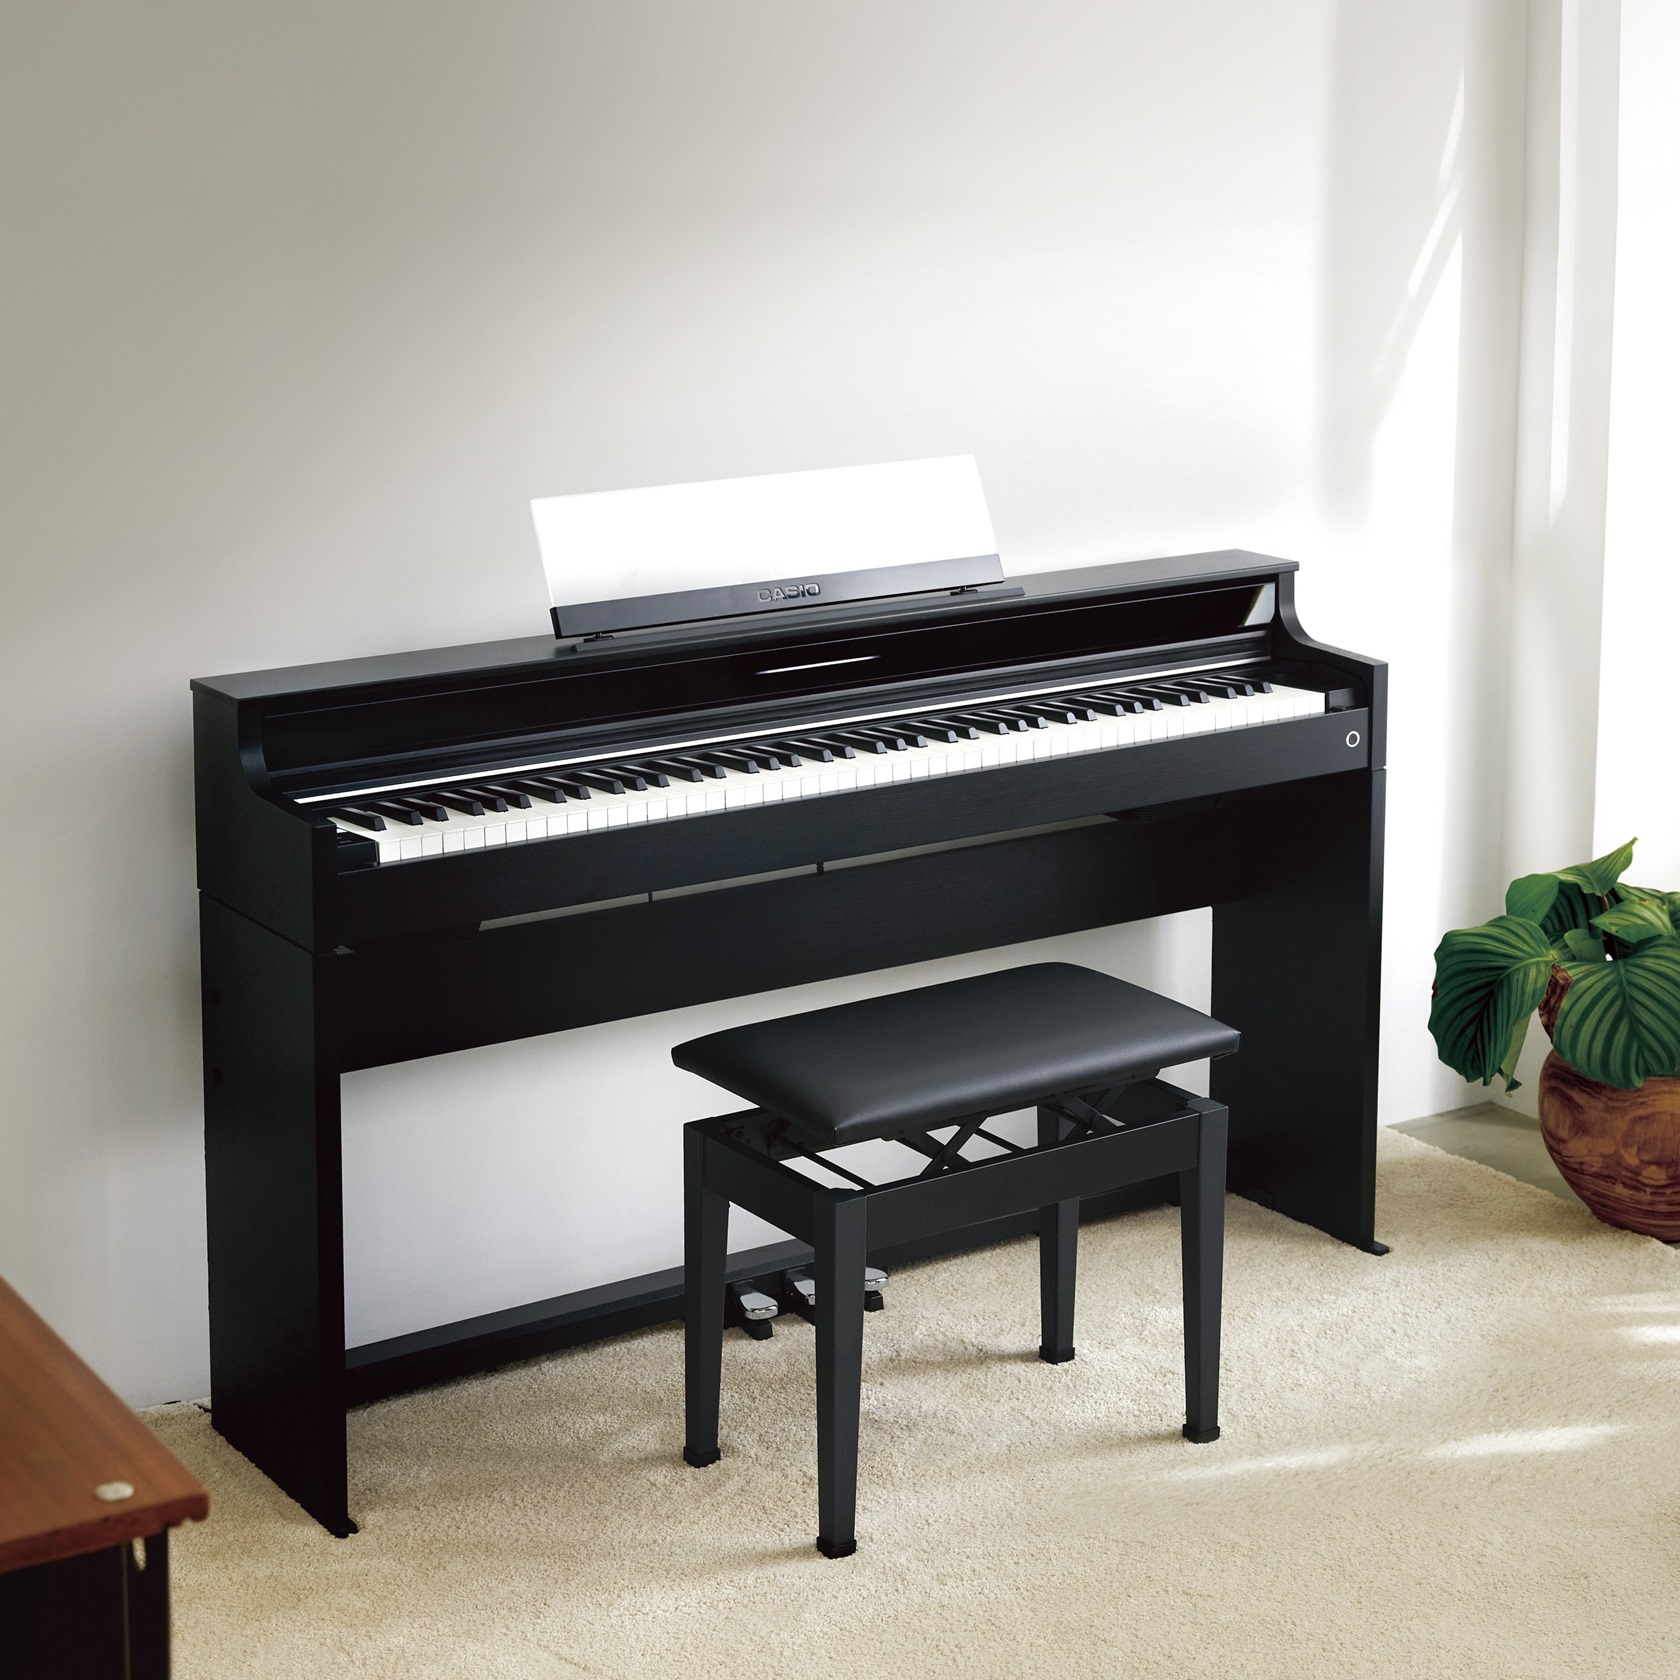 カシオx島村楽器コラボレーション電子ピアノの第9弾！AP-S5000GP/Sが2月22日に発売開始となります！『AP-S5000GP/S』は電子ピアノ『AP-S5000GP』と高低自在椅子『CB-30BK』がセットになったモデルです。コンパクトでスリムな筐体を採用しながらも、ピアノの自然な響きと弾き […]